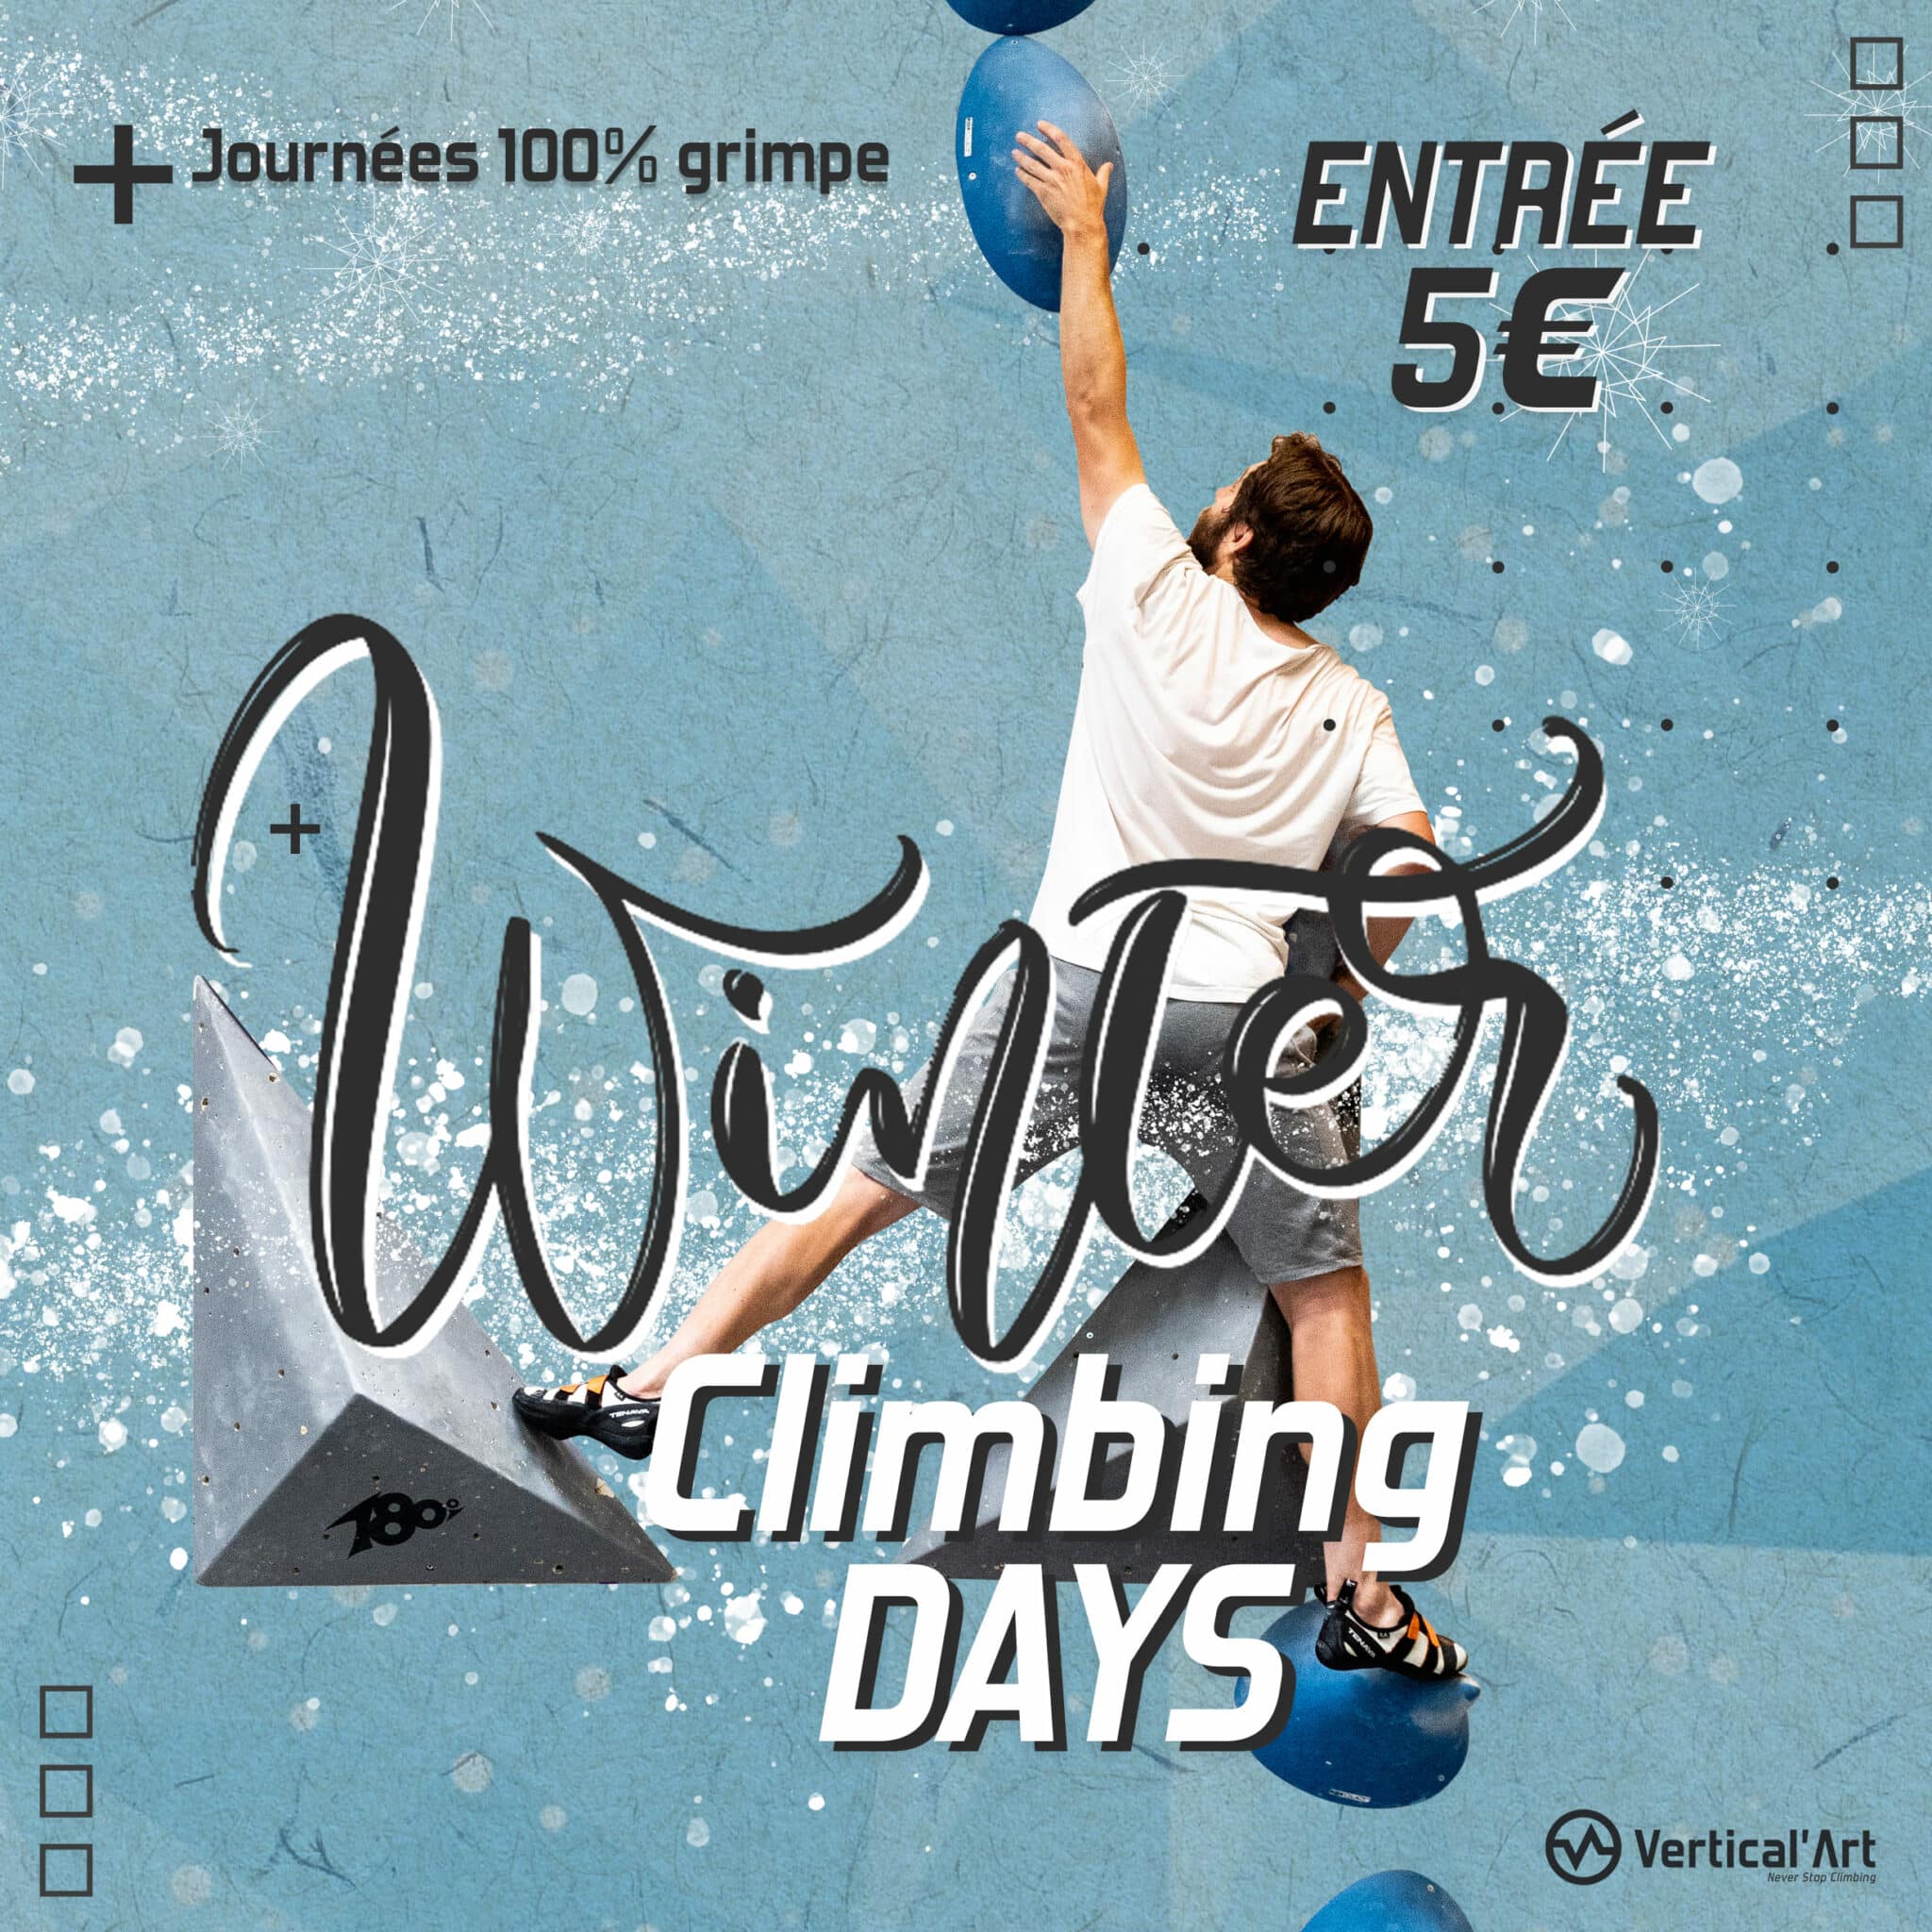 Winter Climbing Days à Vertical’Art Nantes, escalade à 5€ pour tous pendant les vacances d'hiver